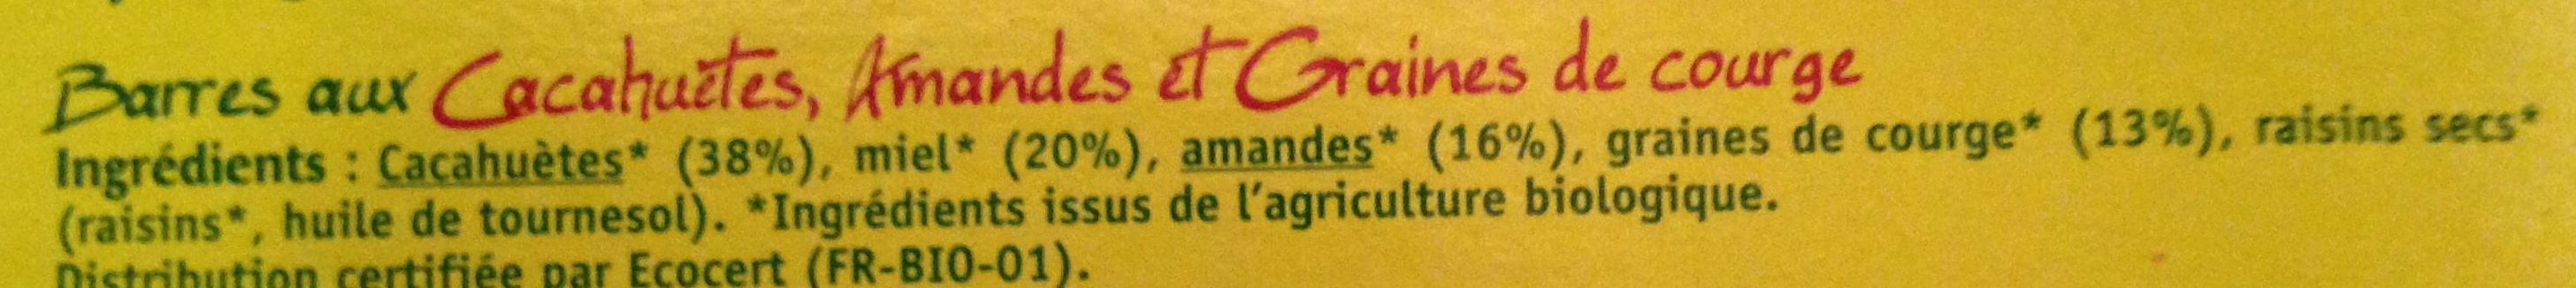 Barres cacahuètes amandes - Ingrédients